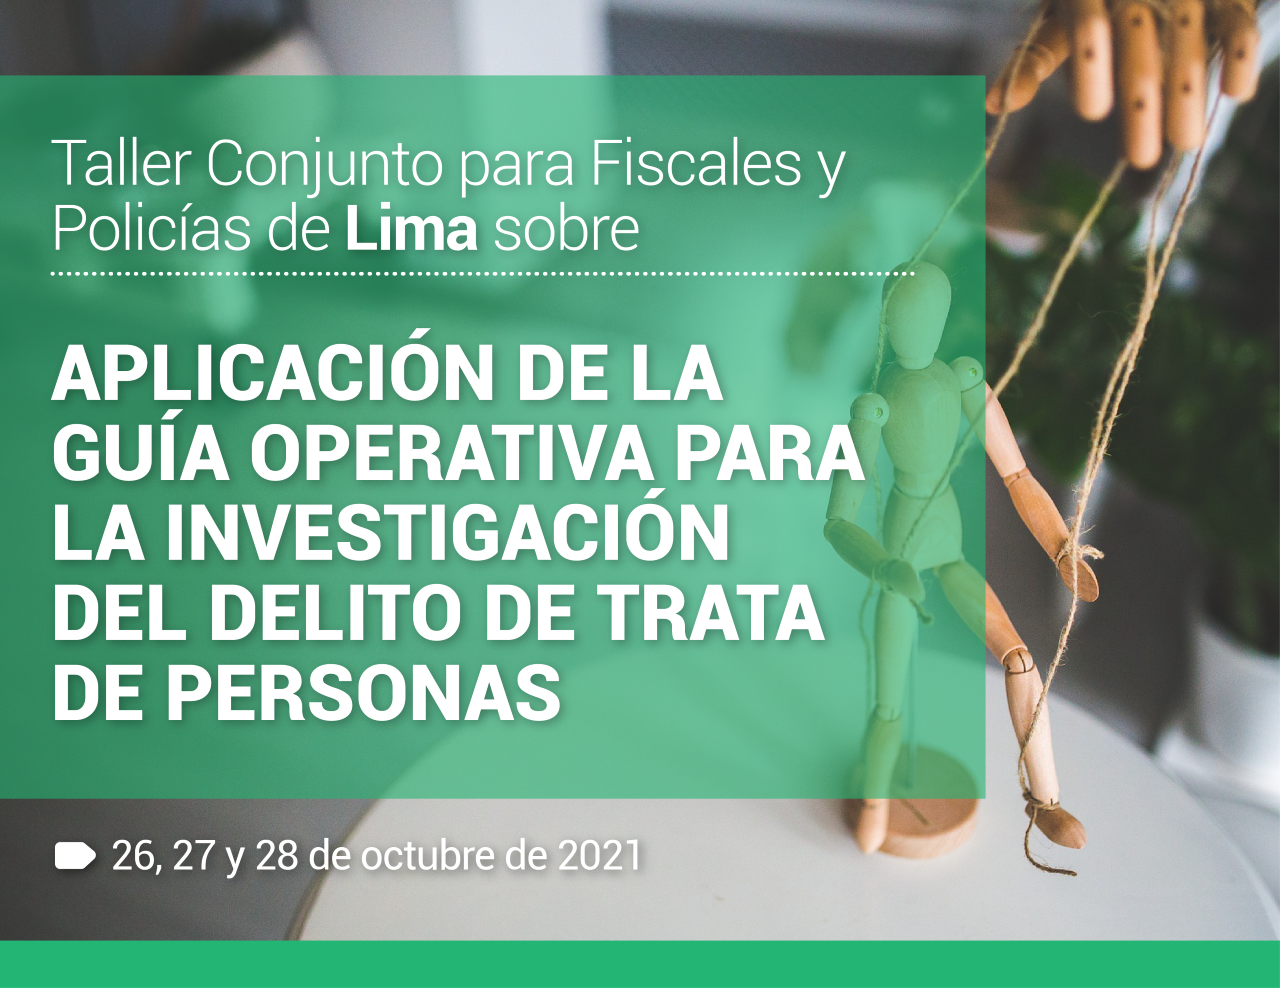 Taller Conjunto para Fiscales y Policías de Lima sobre la aplicación de la Guía Operativa para la Investigación del Delito de Trata de Personas